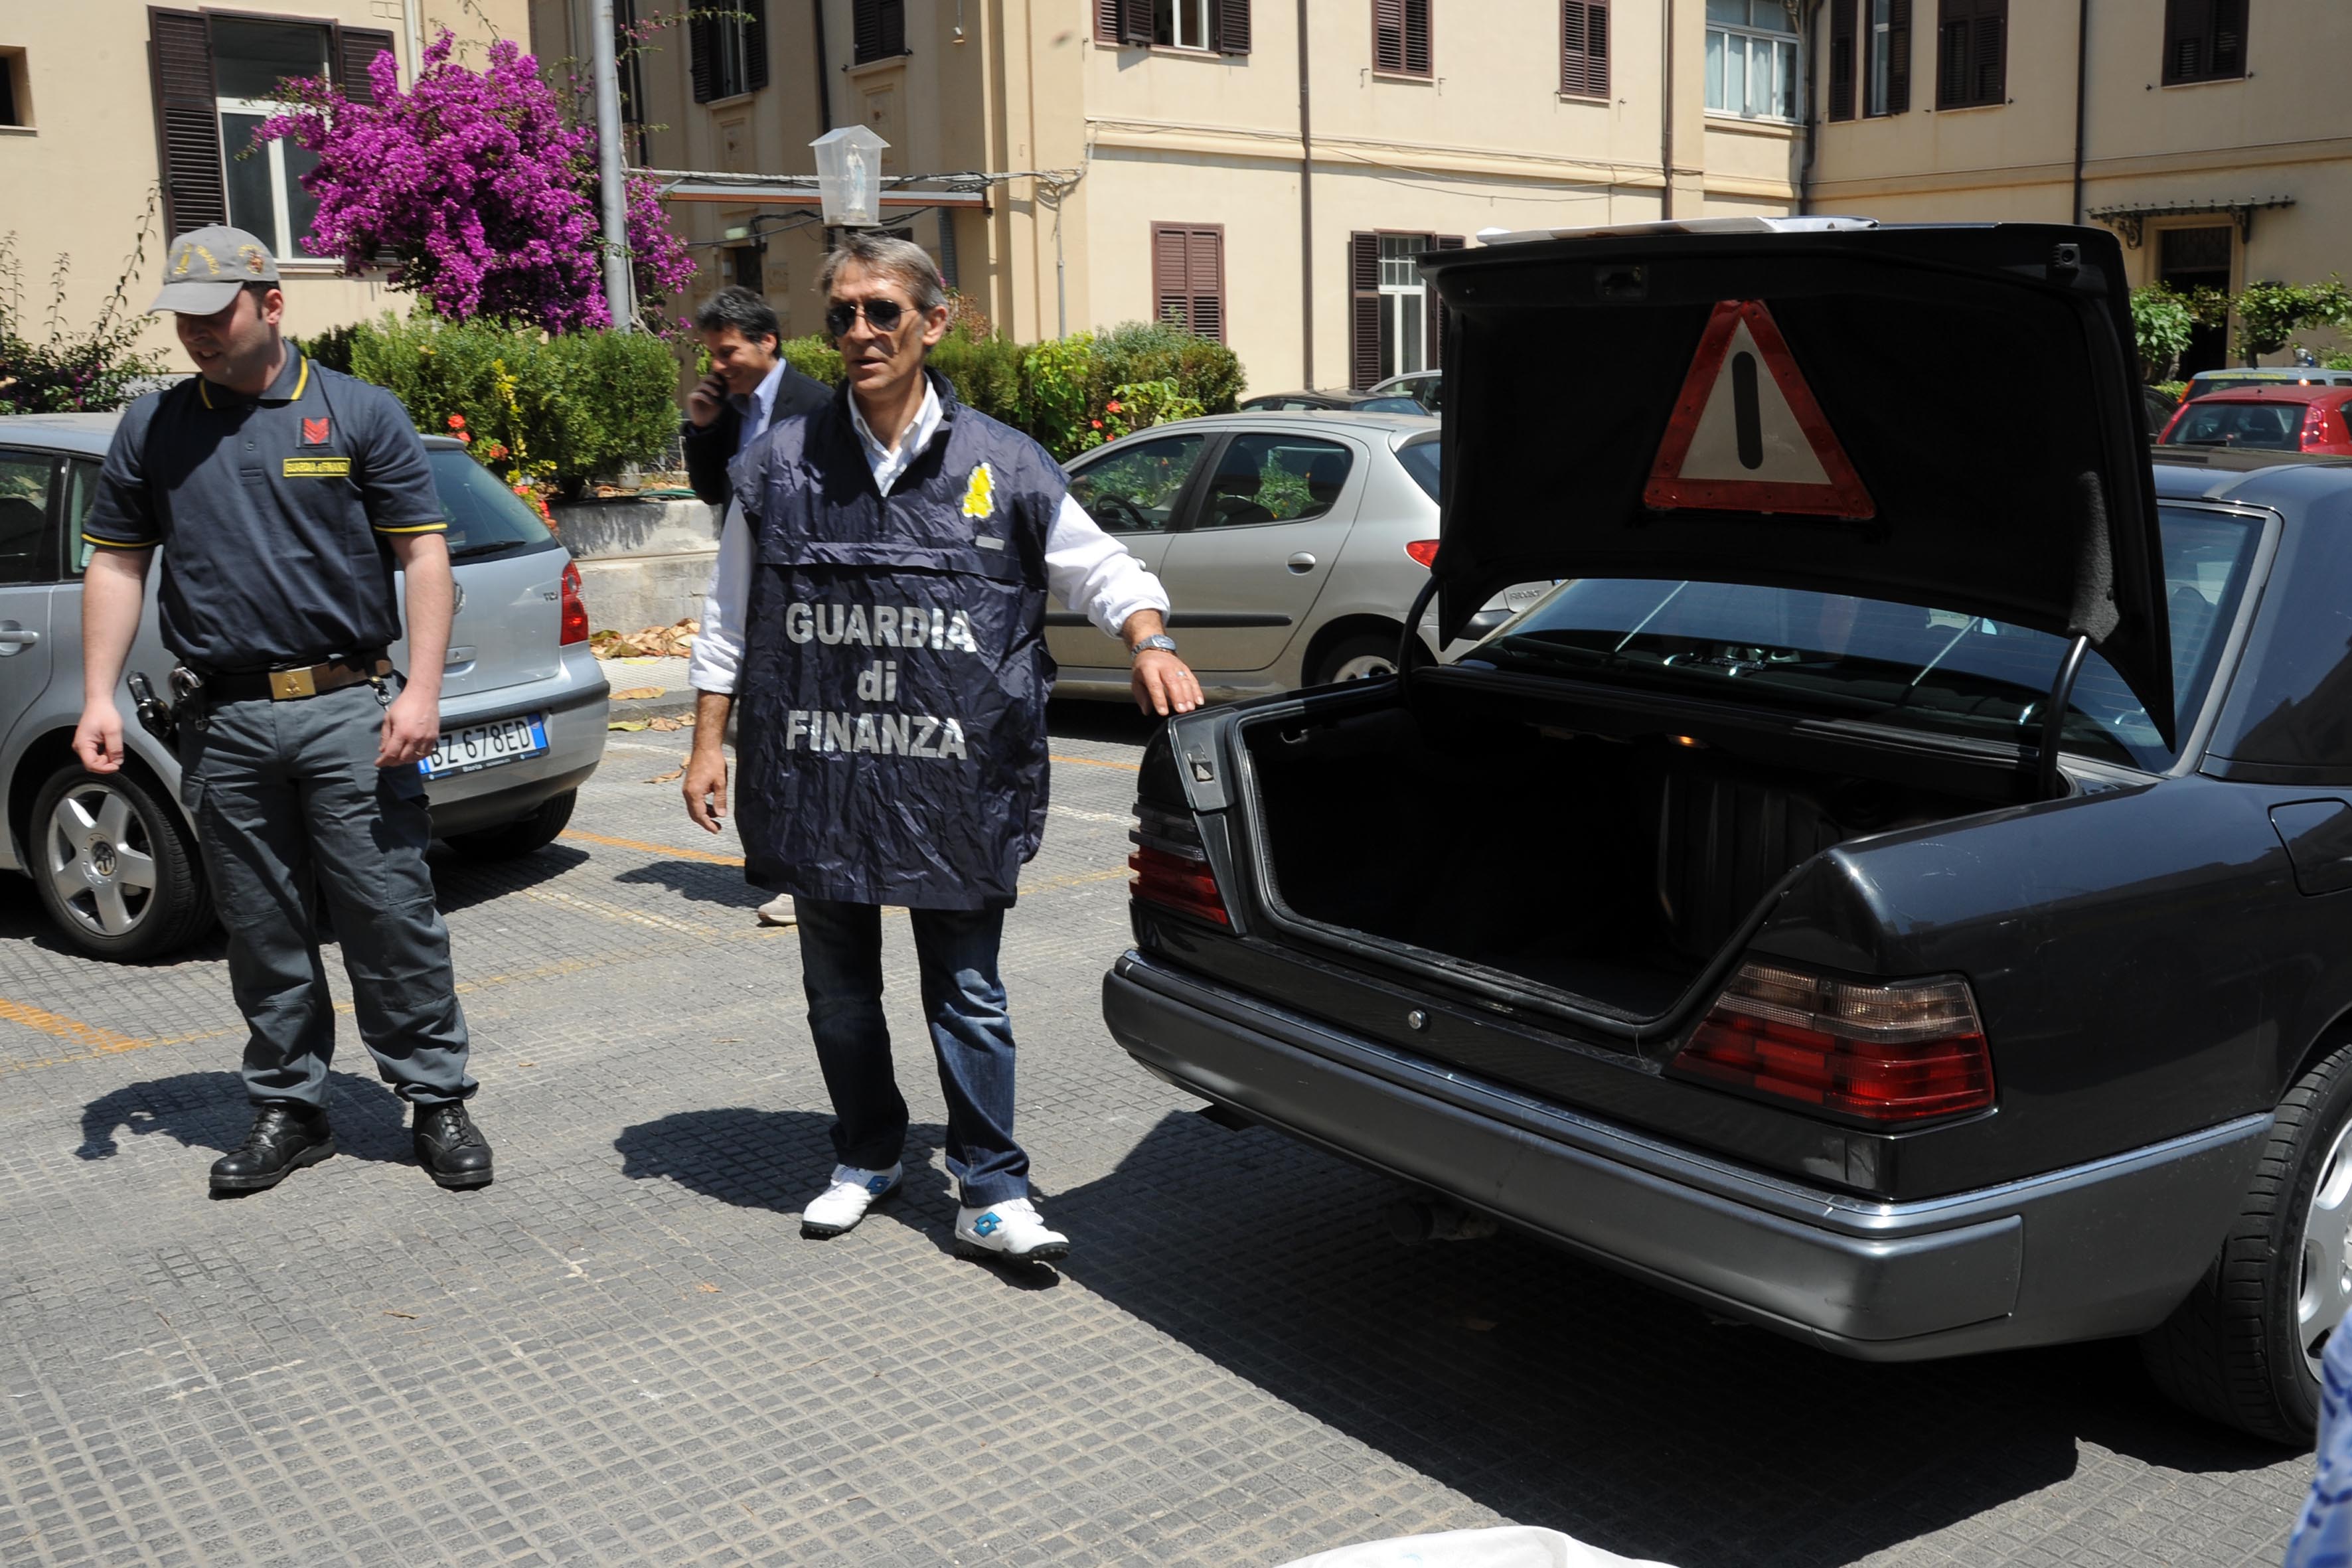 Minorenne tunisino scappa da Messina e viene intercettato a Civitanova mentre spacciava eroina